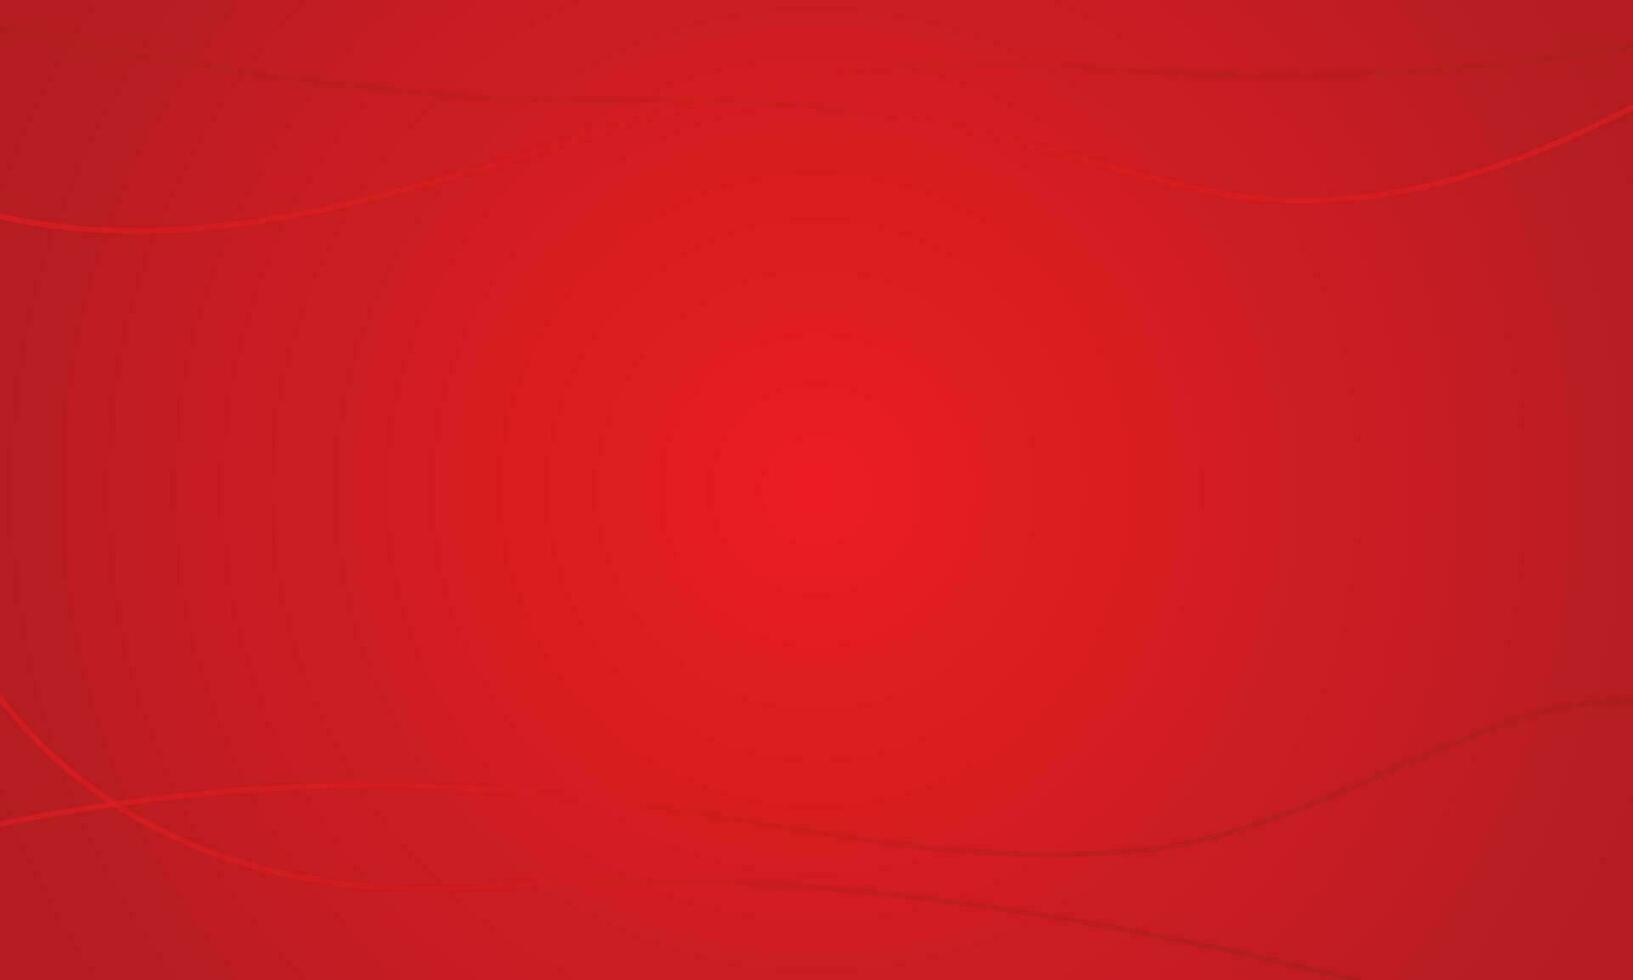 abstract rood backround met goud lijn vector illustratie